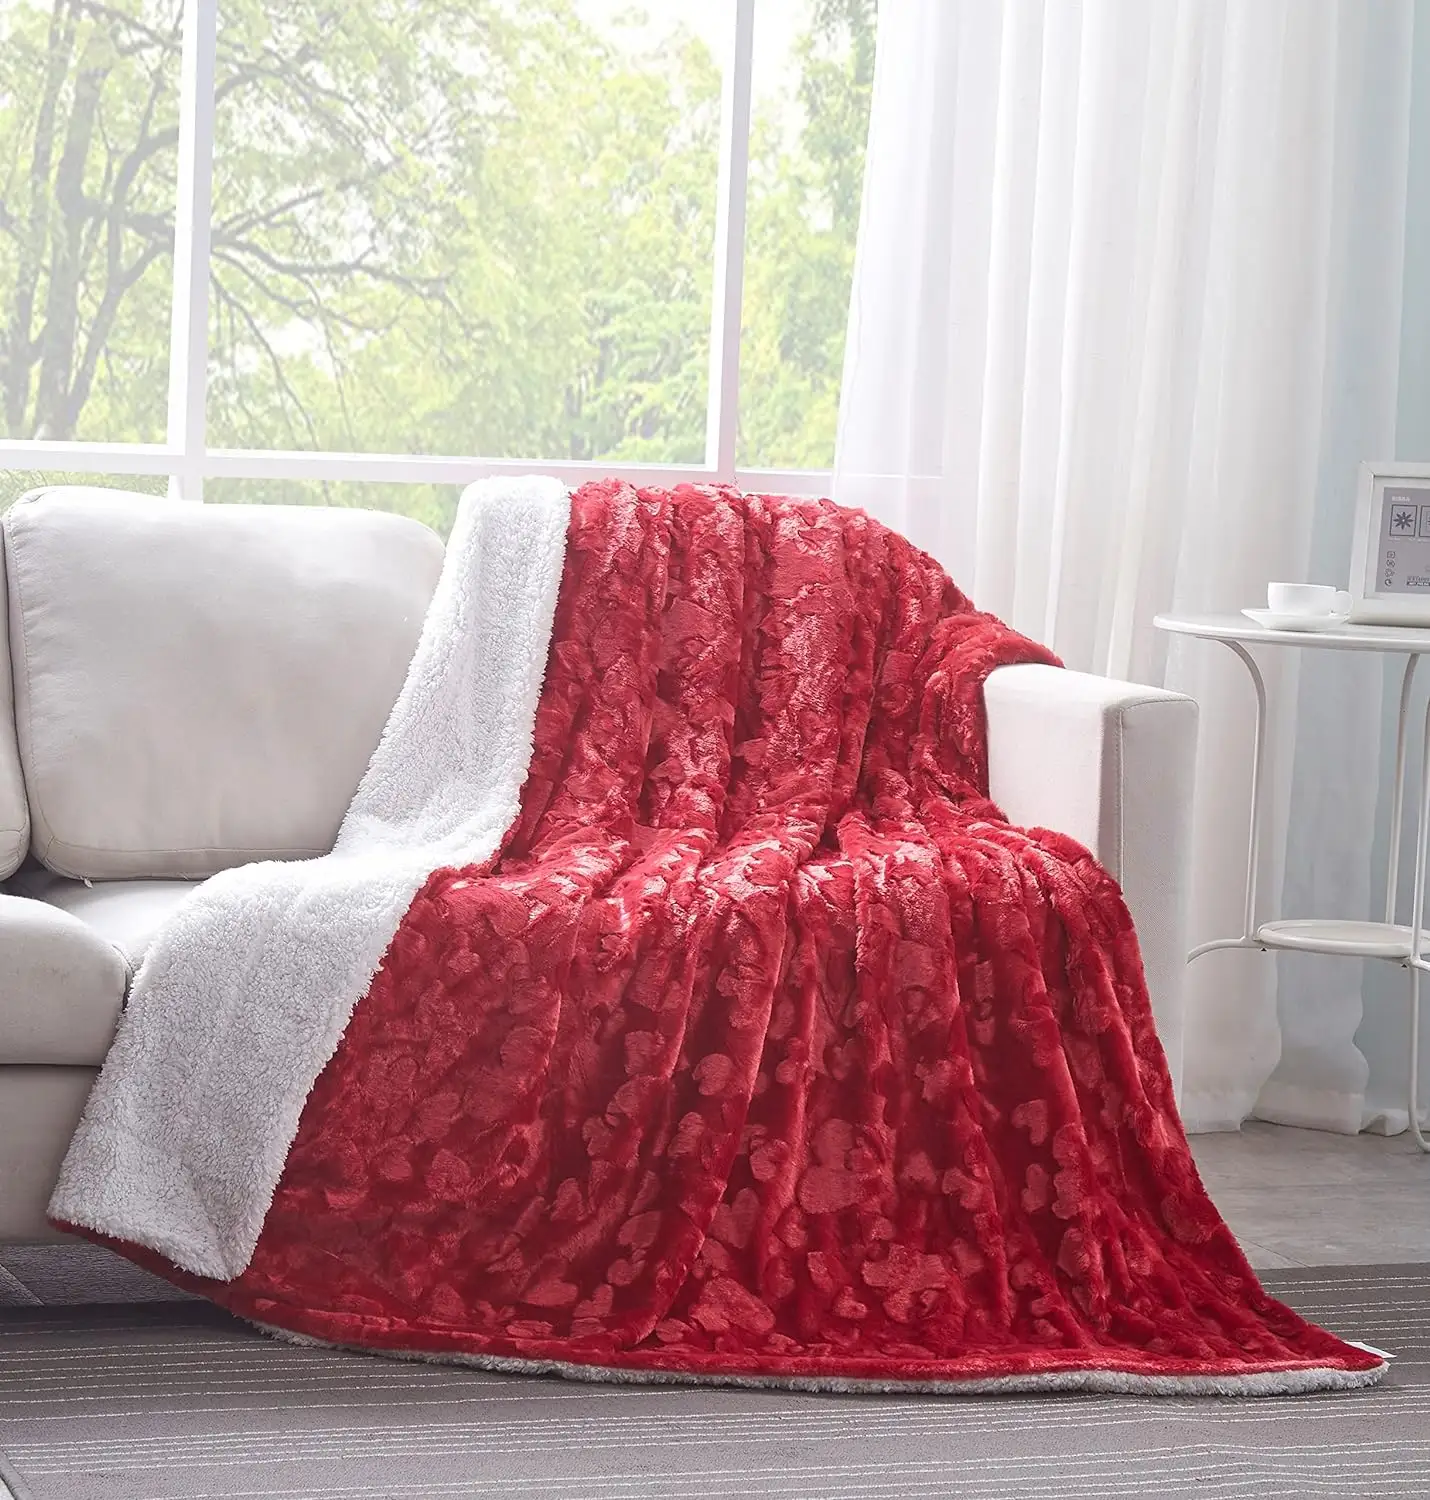 Cobertor Sherpa personalizado com cobertor de pelúcia de cordeiro em relevo, macio e quente, cobertor confortável de sofá-cama dupla face